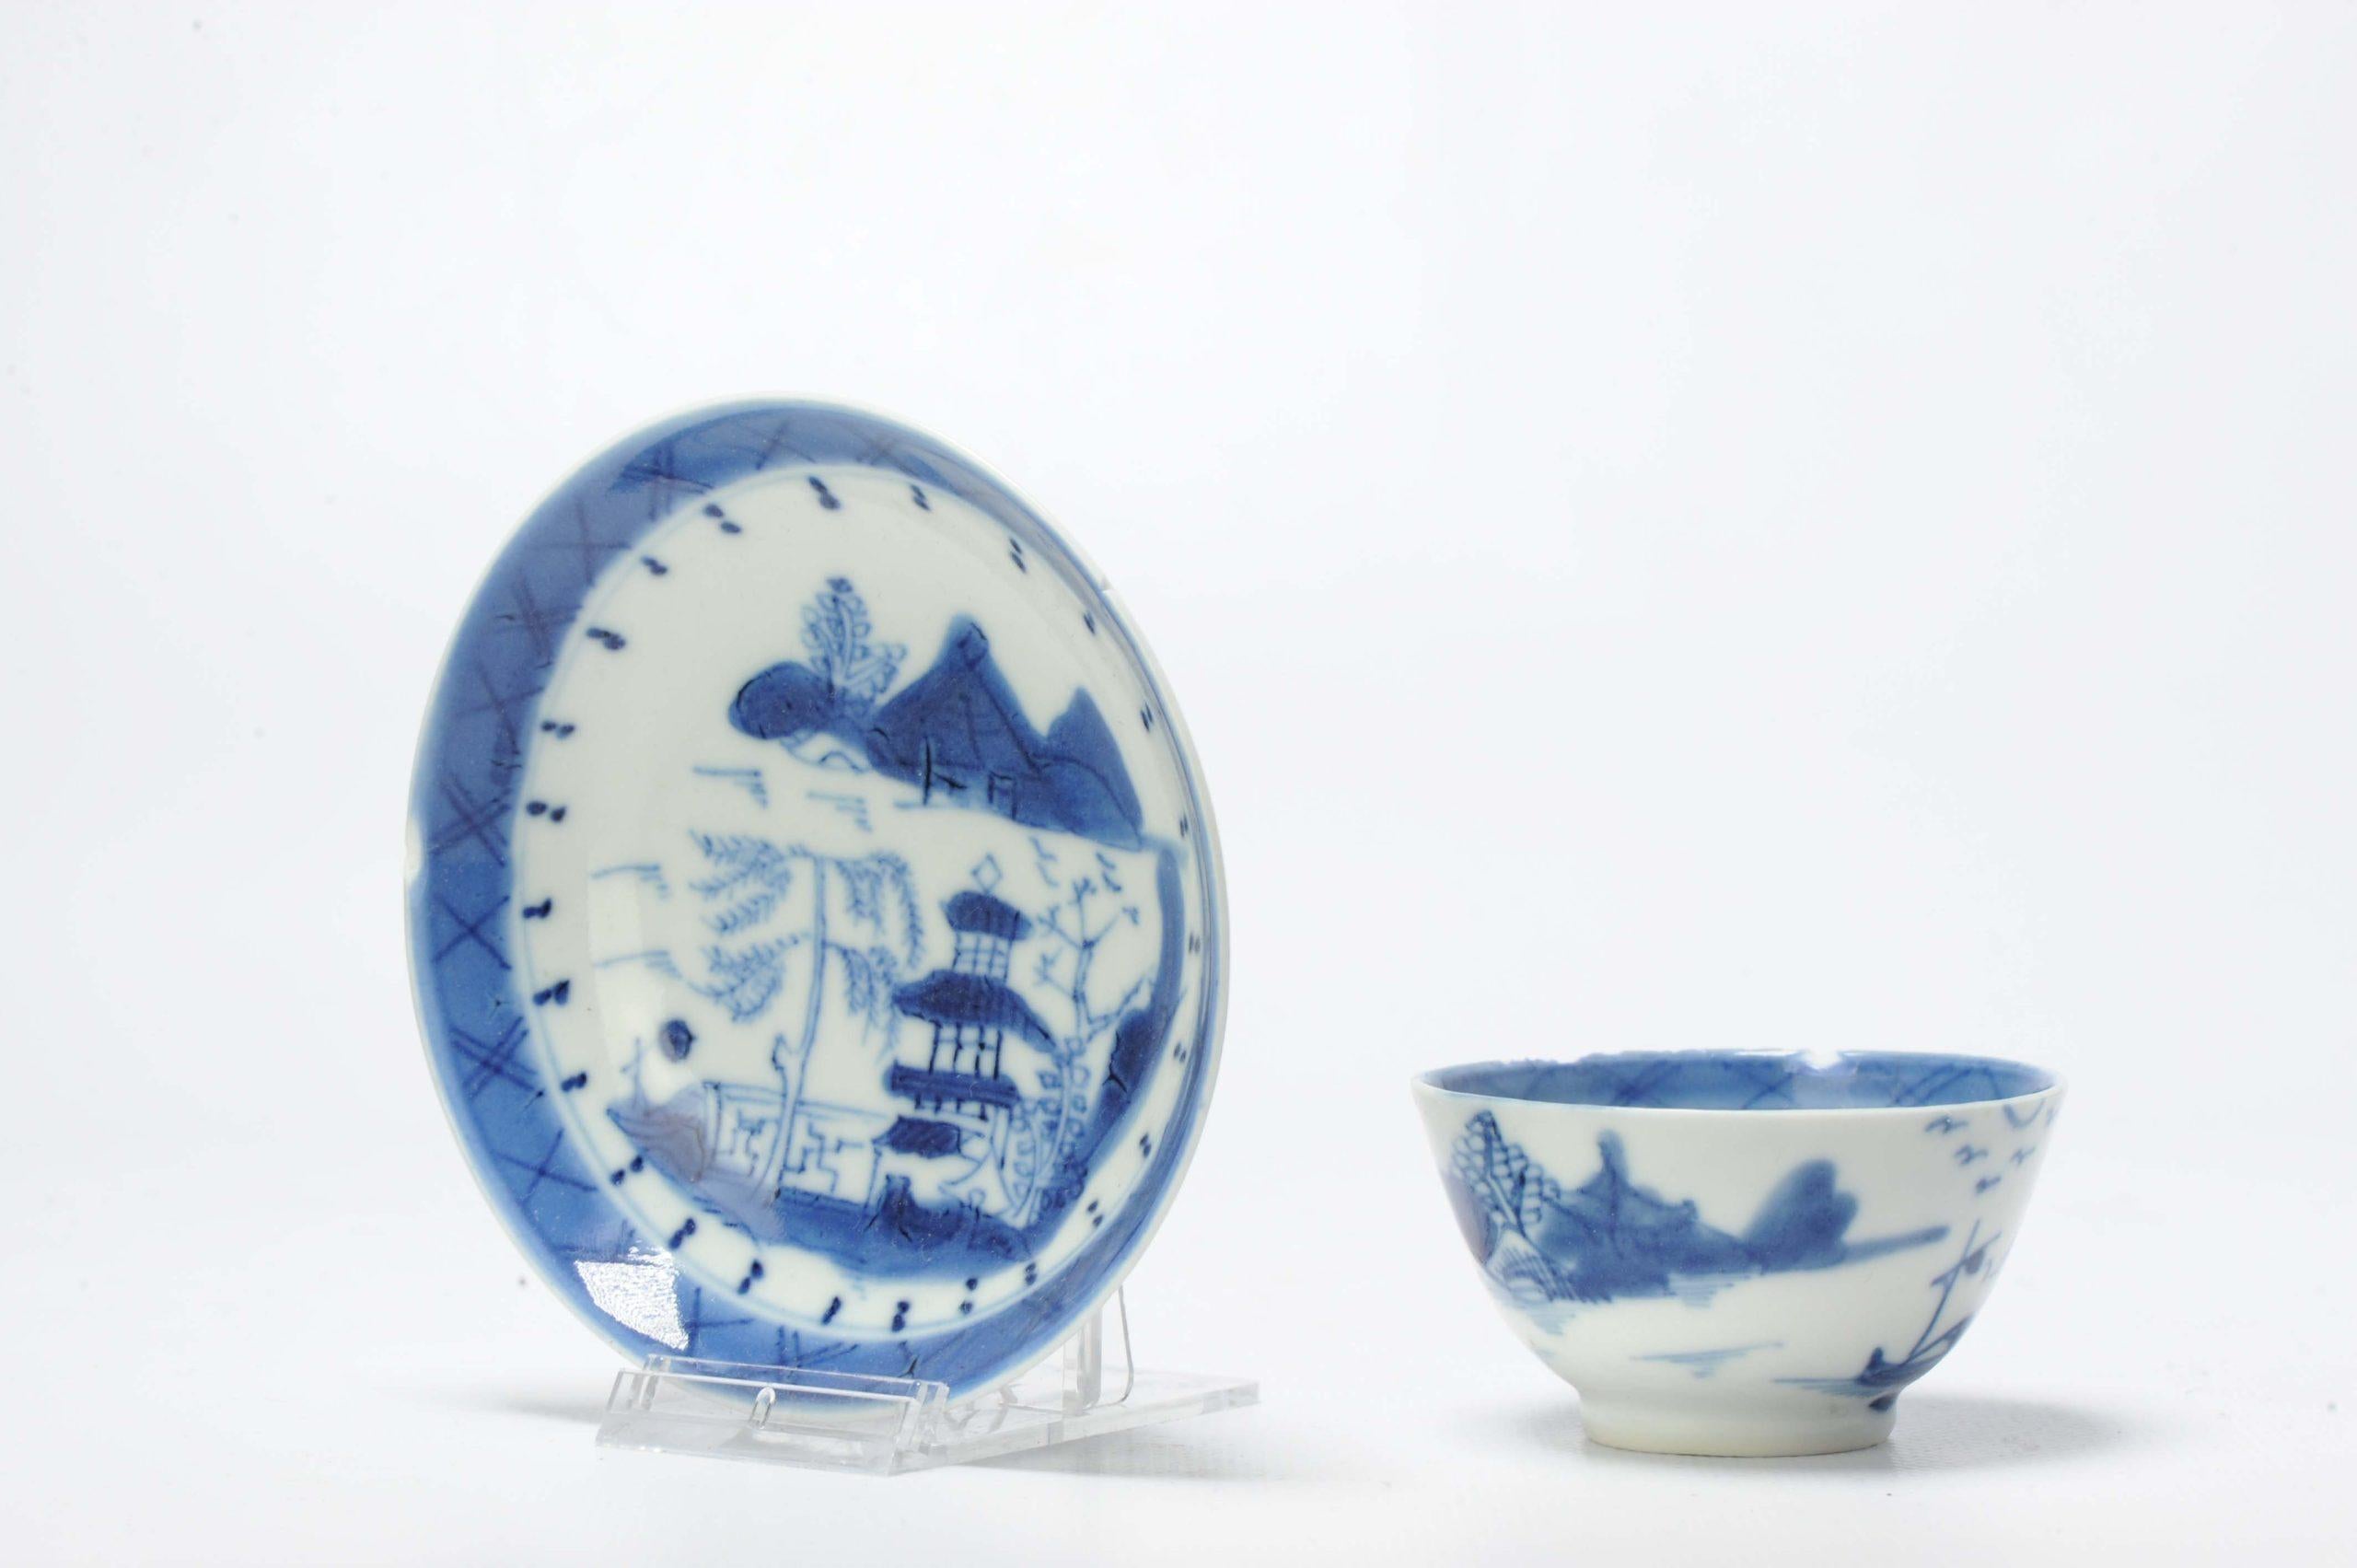 Blaue und weiße Tasse mit Untertasse aus dem 18. Jahrhundert mit einer Pagodenszene in einer Landschaft.

Zusätzliche Informationen:
MATERIAL: Porzellan & Töpferei
Art: Schalen, Tee/Kaffee trinken: Schalen, Tassen & Teekannen
Herkunftsregion: